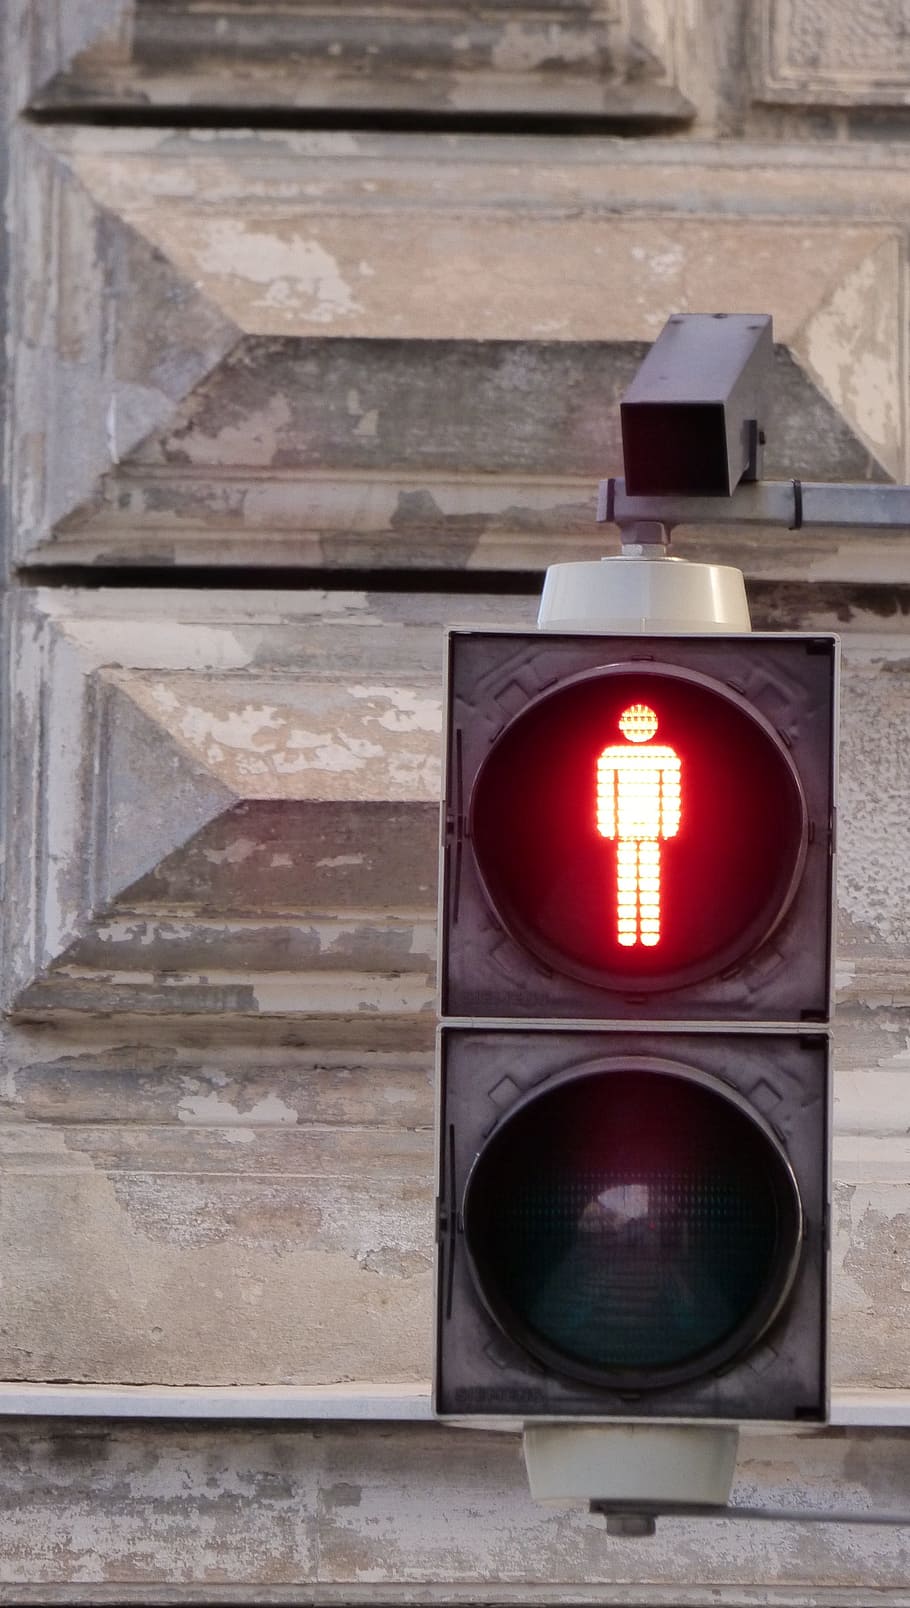 Luz de rua, luz, vermelho, luz vermelha, sinalização, rua, pare, semáforo, equipamento de iluminação, sinal de stop